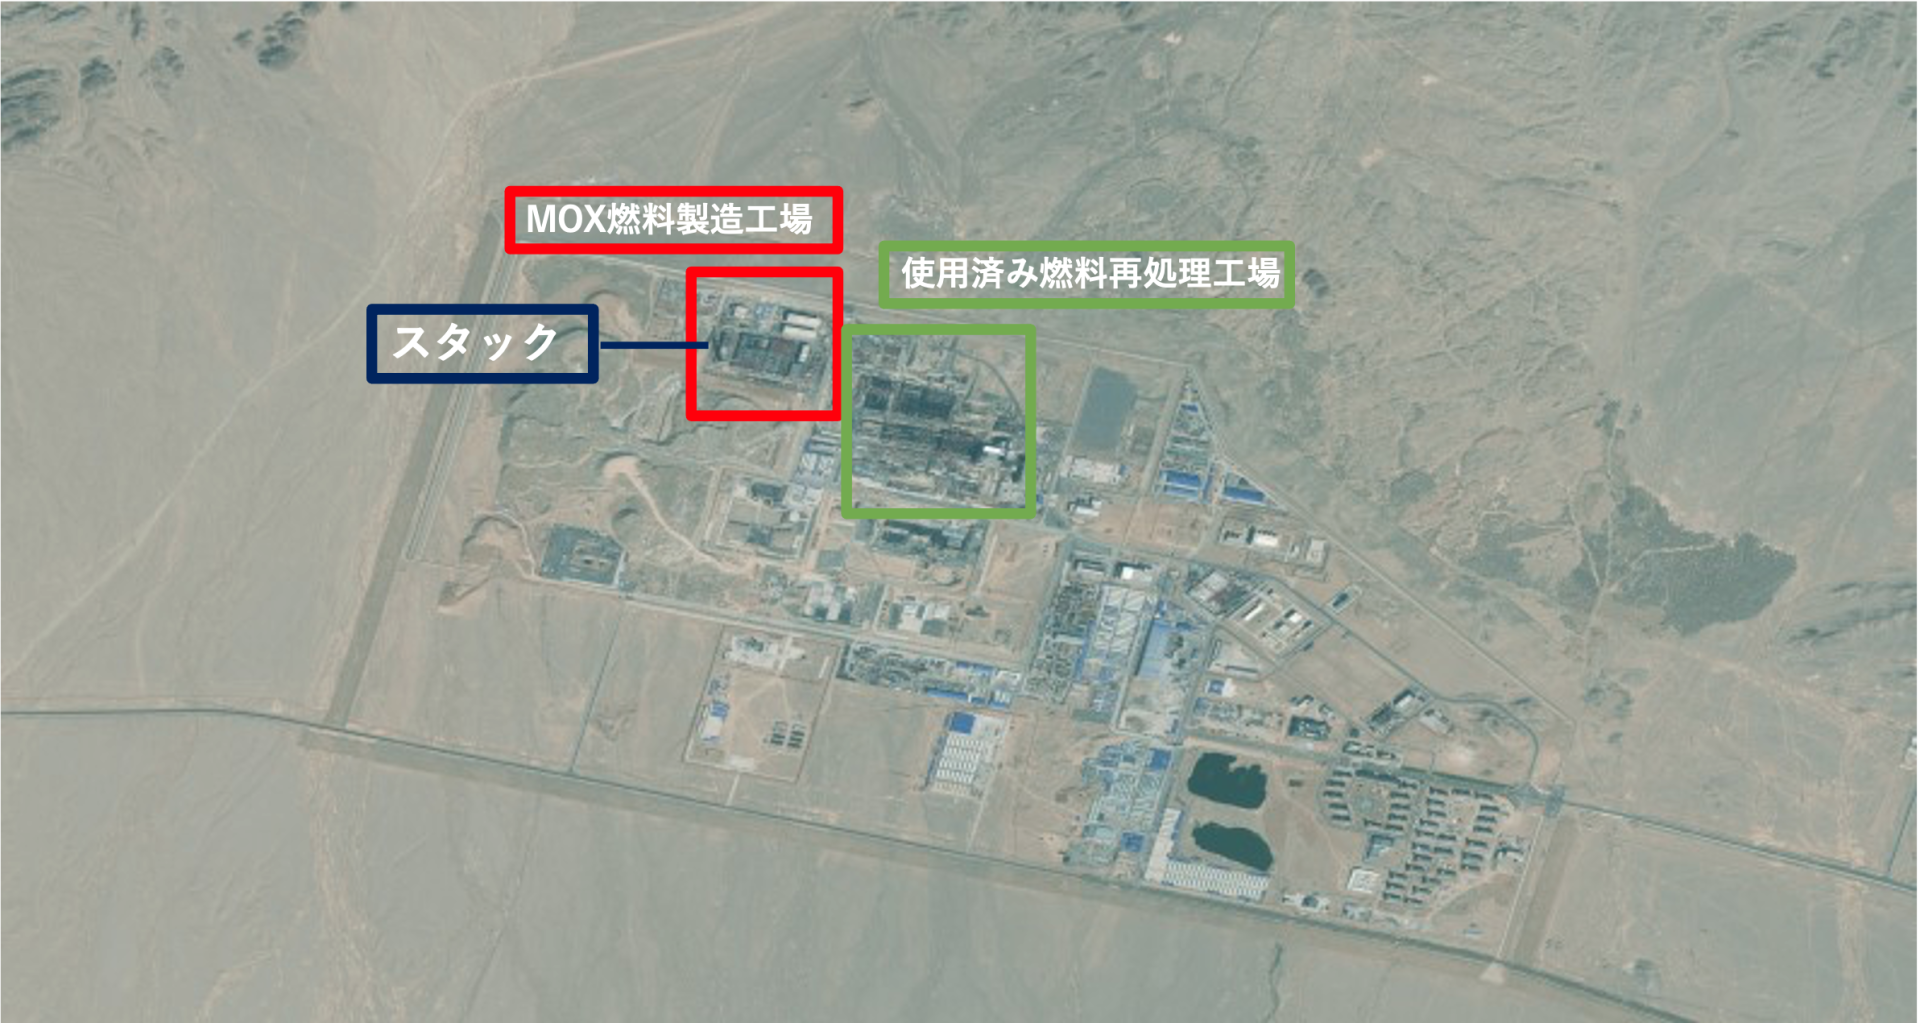 中国のプルトニウム生産と核軍拡